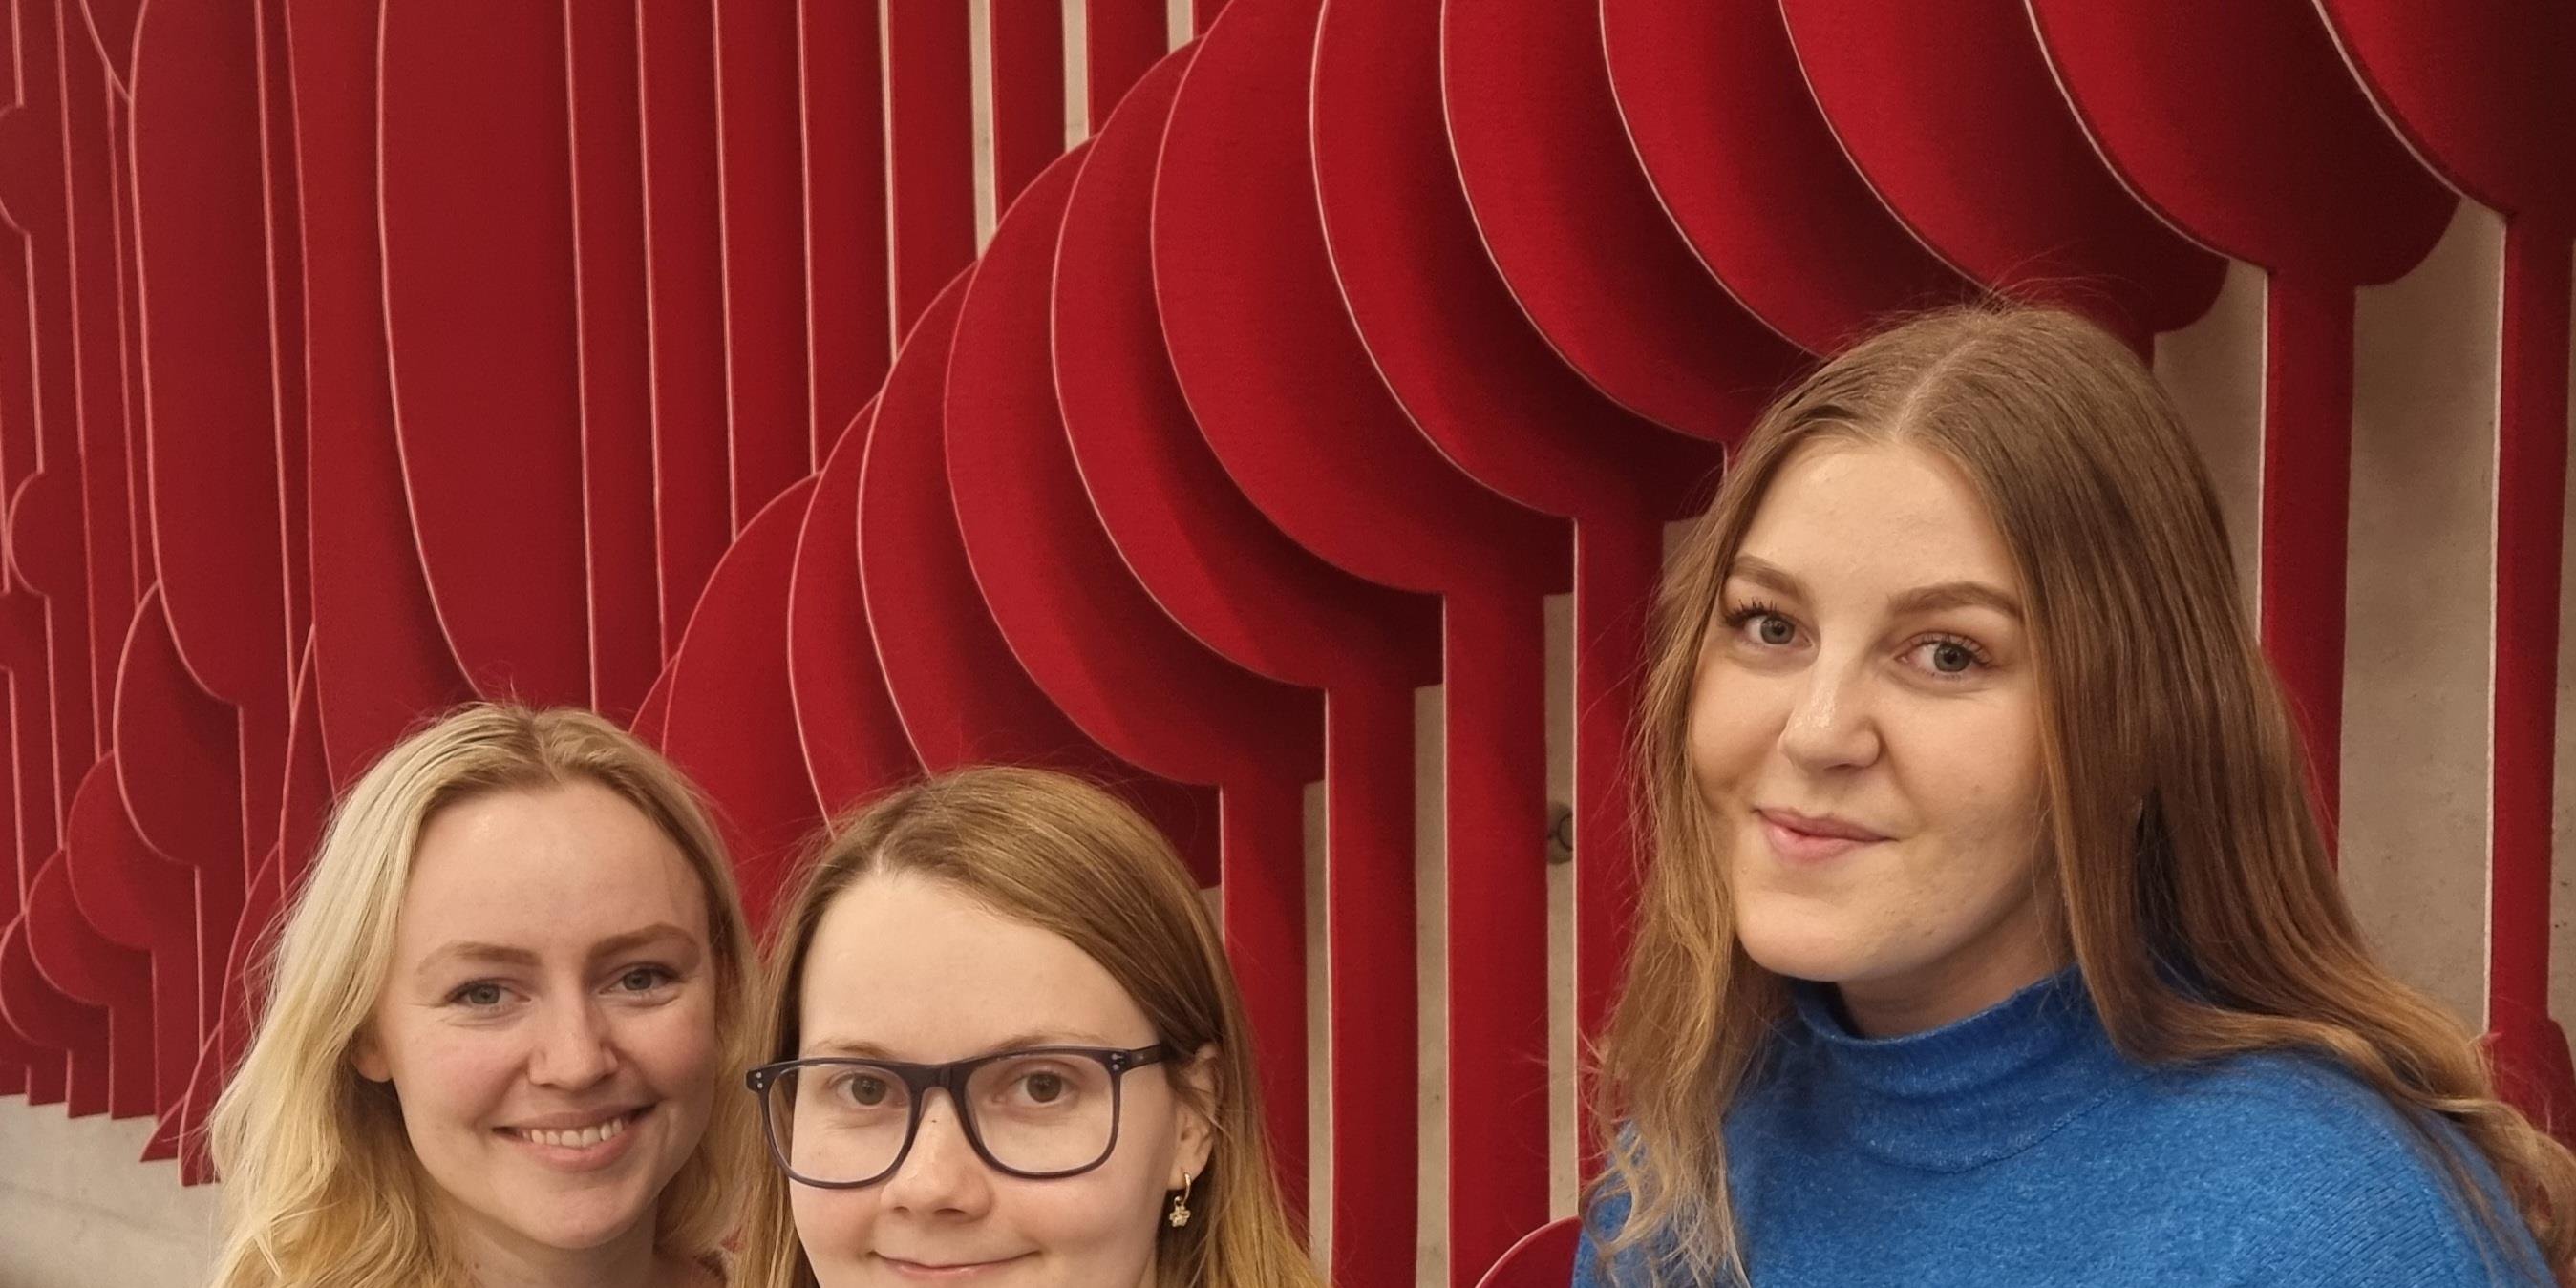 Tre kvinner smiler til kameraet. Bak dem er en rød utsmykning på veggen. Foto.